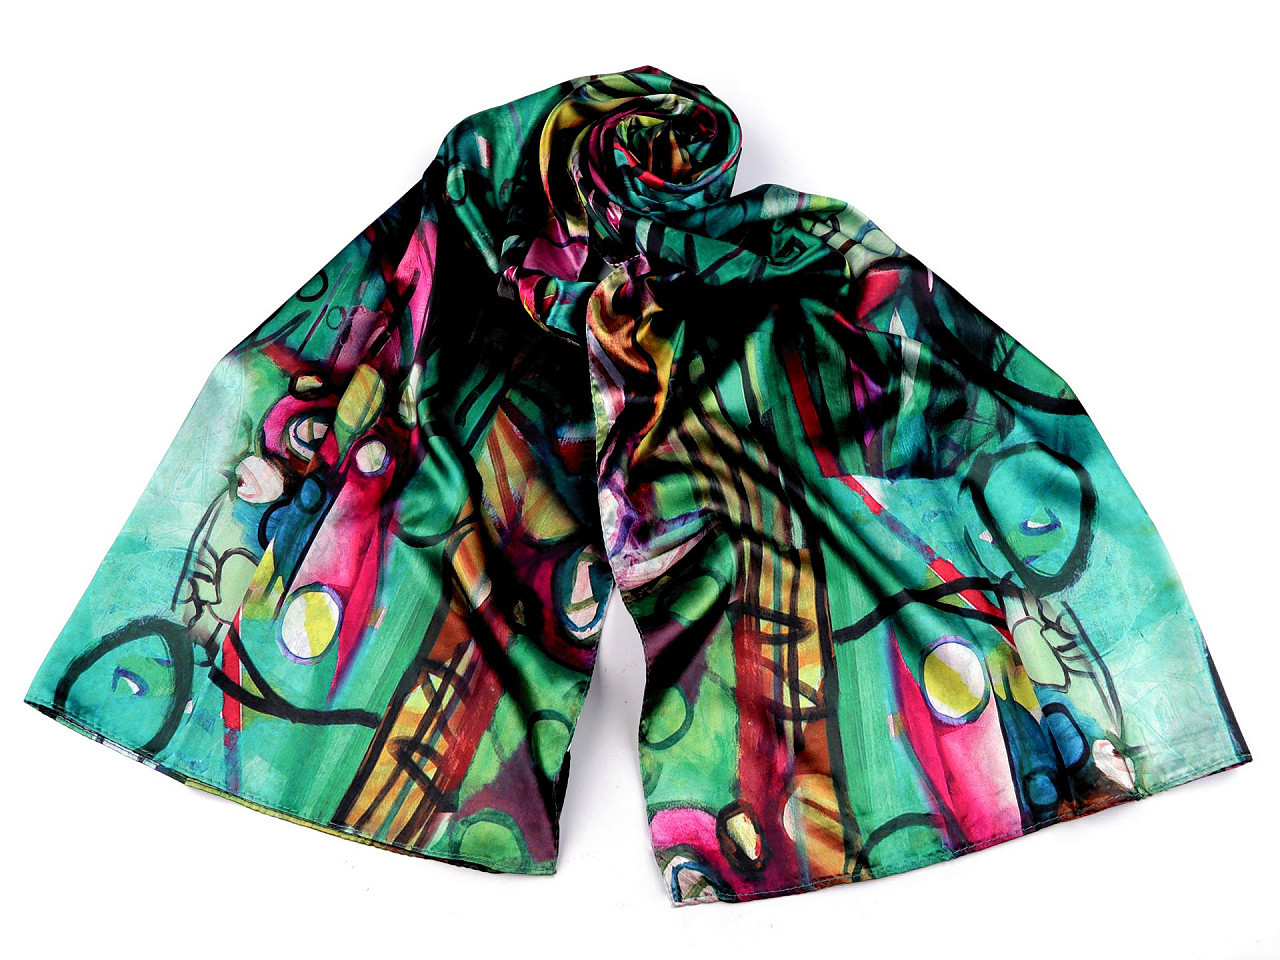 Saténový šátek / šála 70x165 cm, barva 28 zelená smaragdová